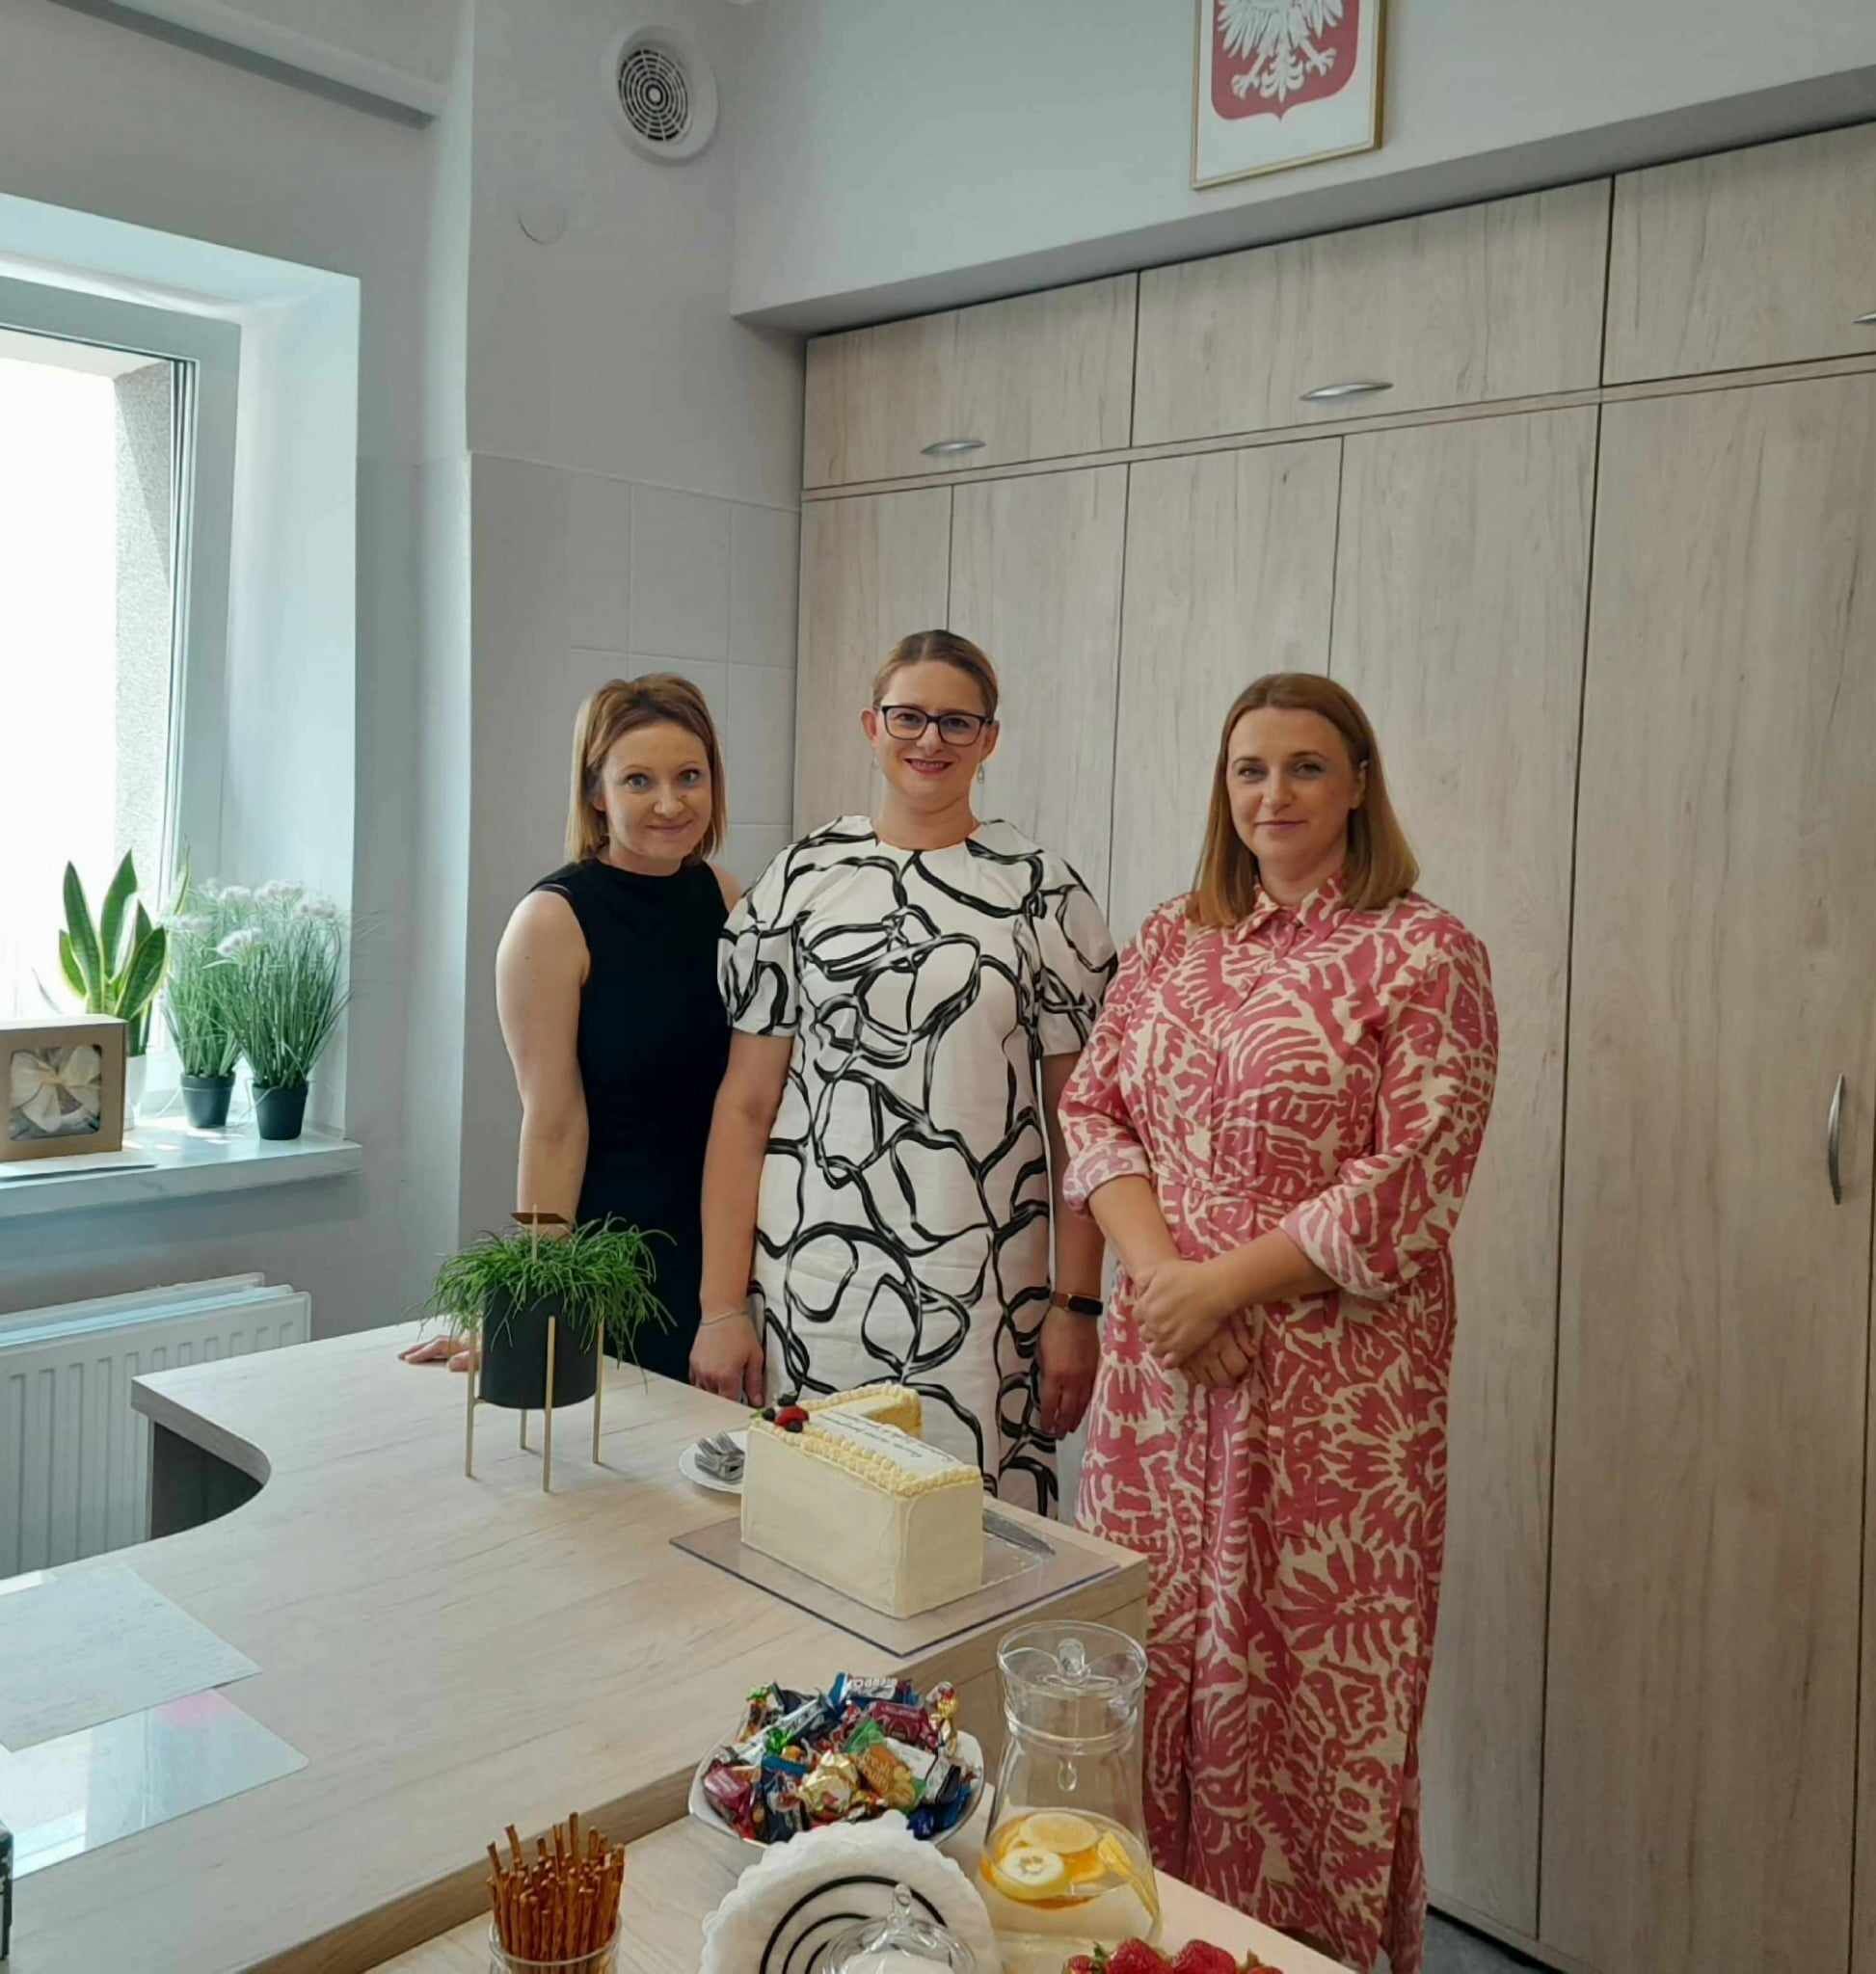 Trzy kobiety uśmiechają się do kamery, stojąc w jasnym pomieszczeniu, prawdopodobnie kuchni, z rośliną na blacie i polskim godłem na ścianie.